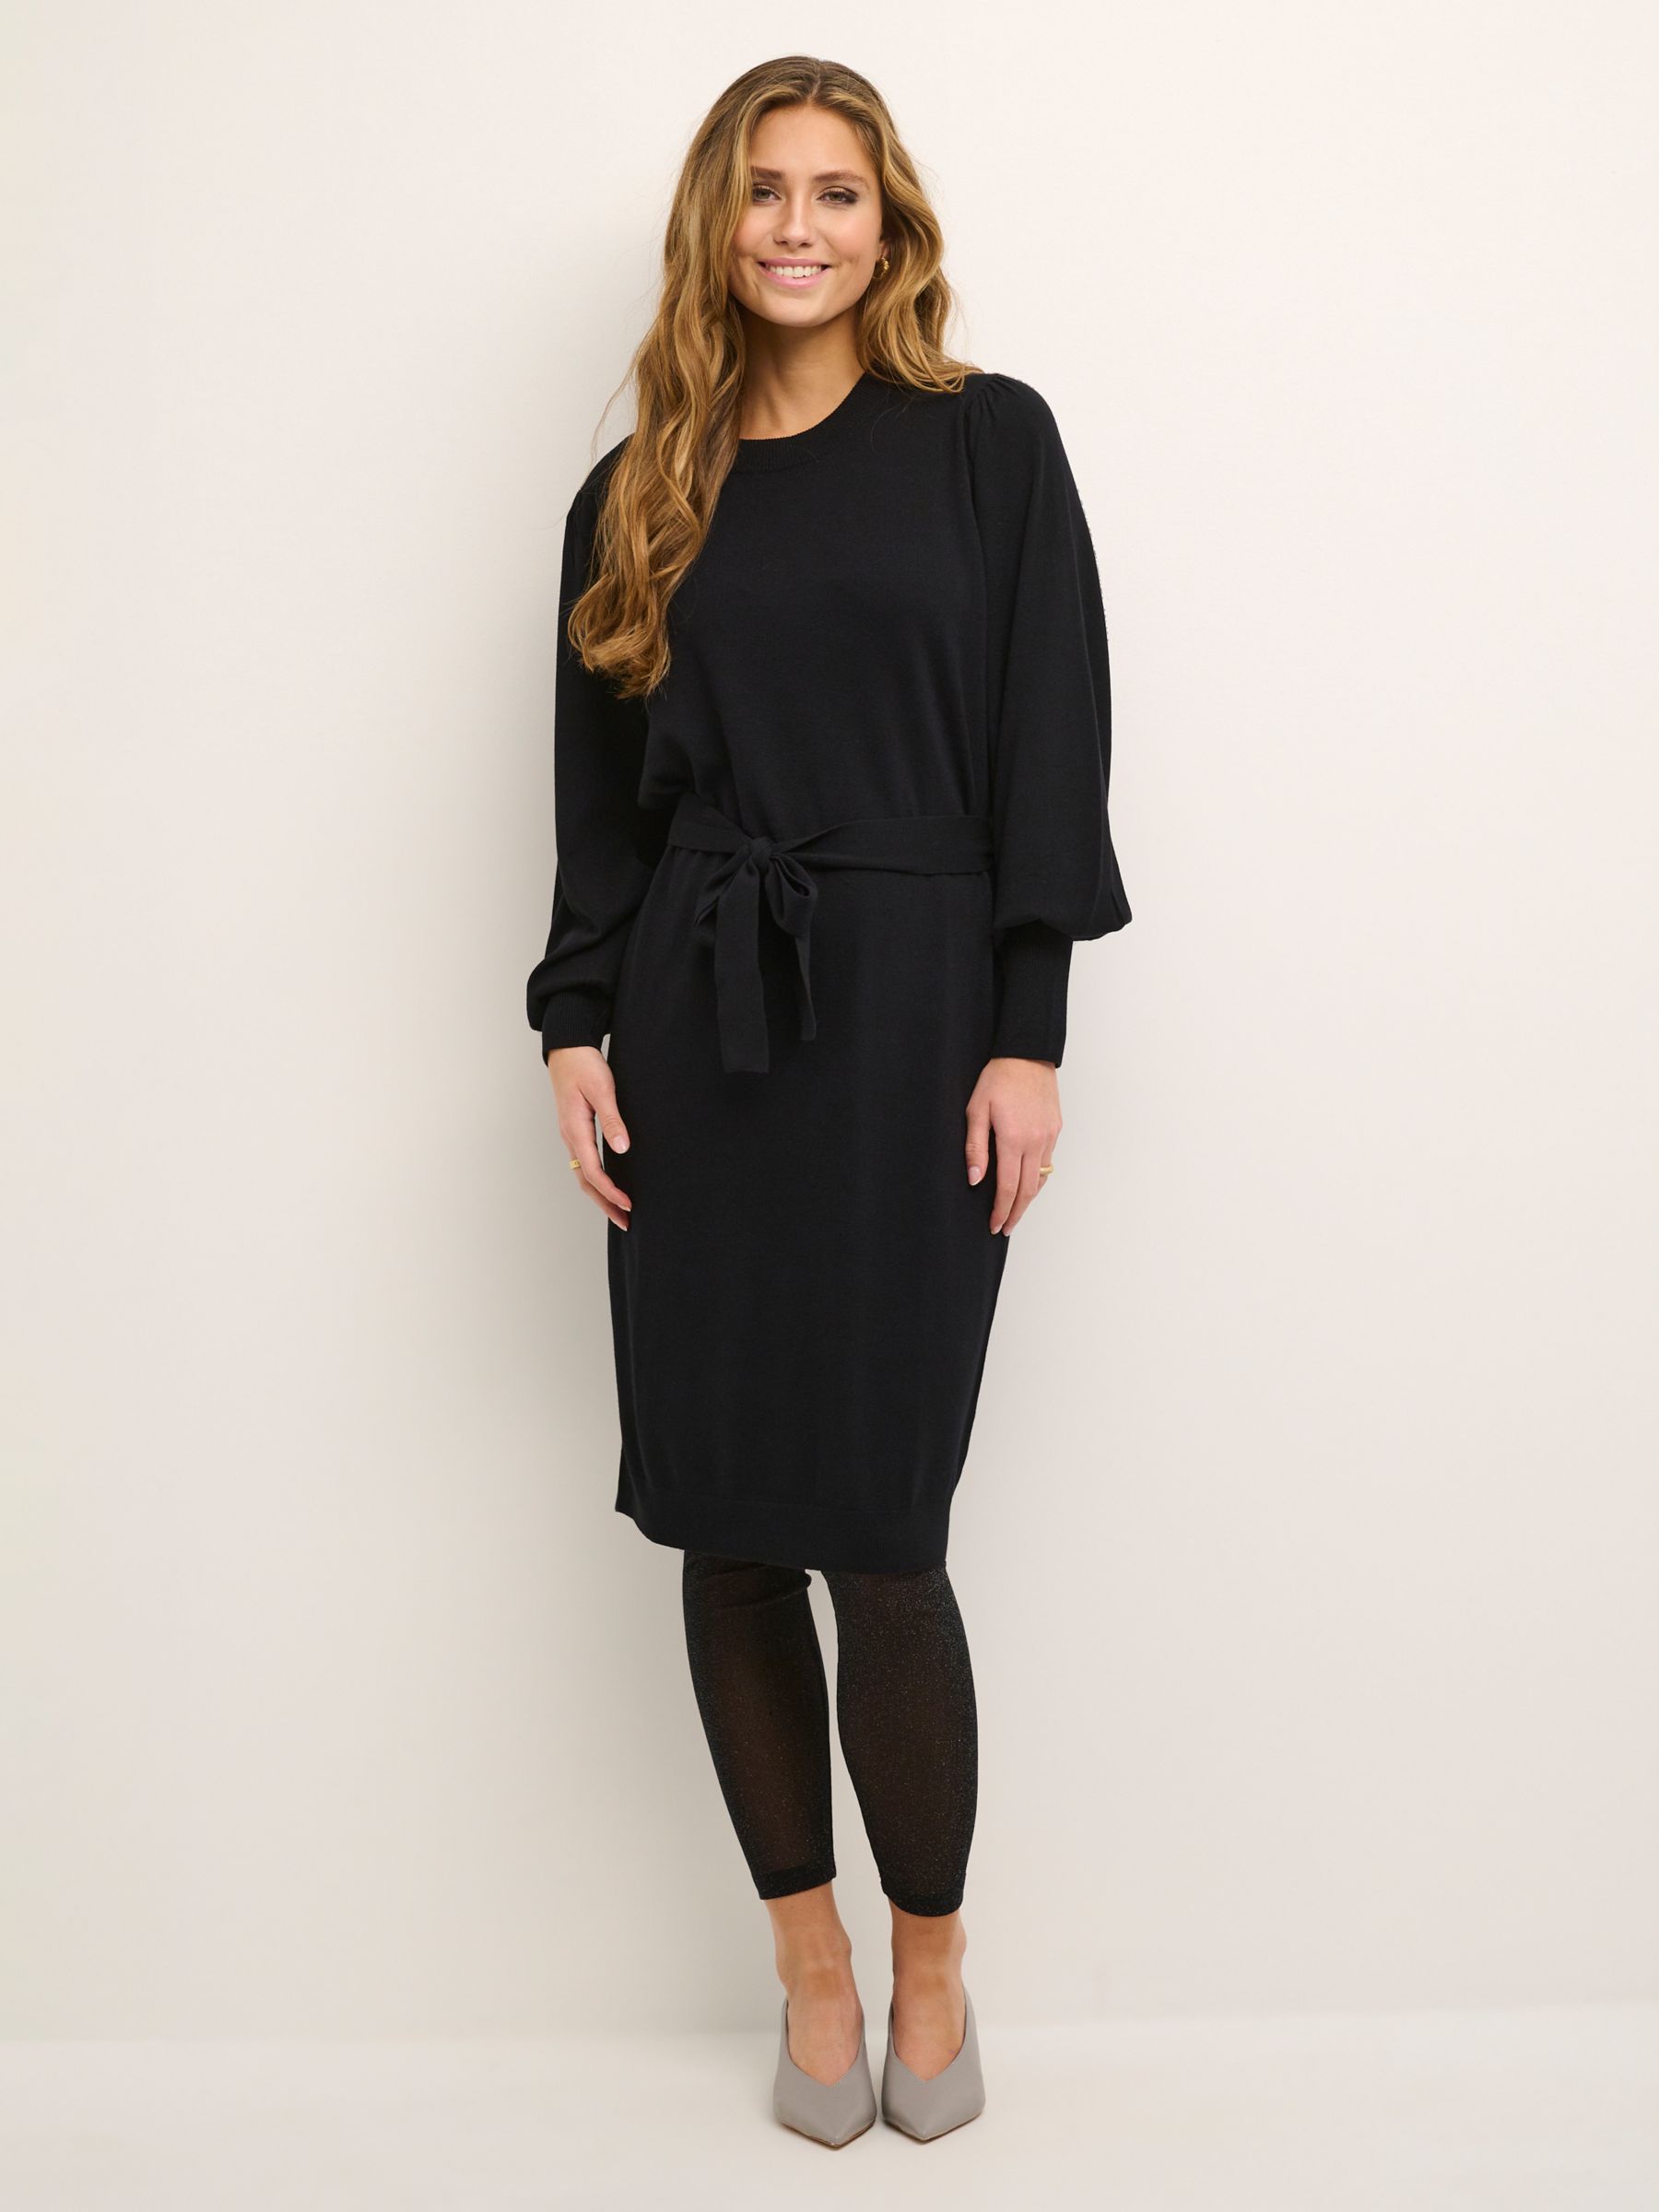 KAFFE Jess Knit Jumper Dress, Deep Black at John Lewis & Partners